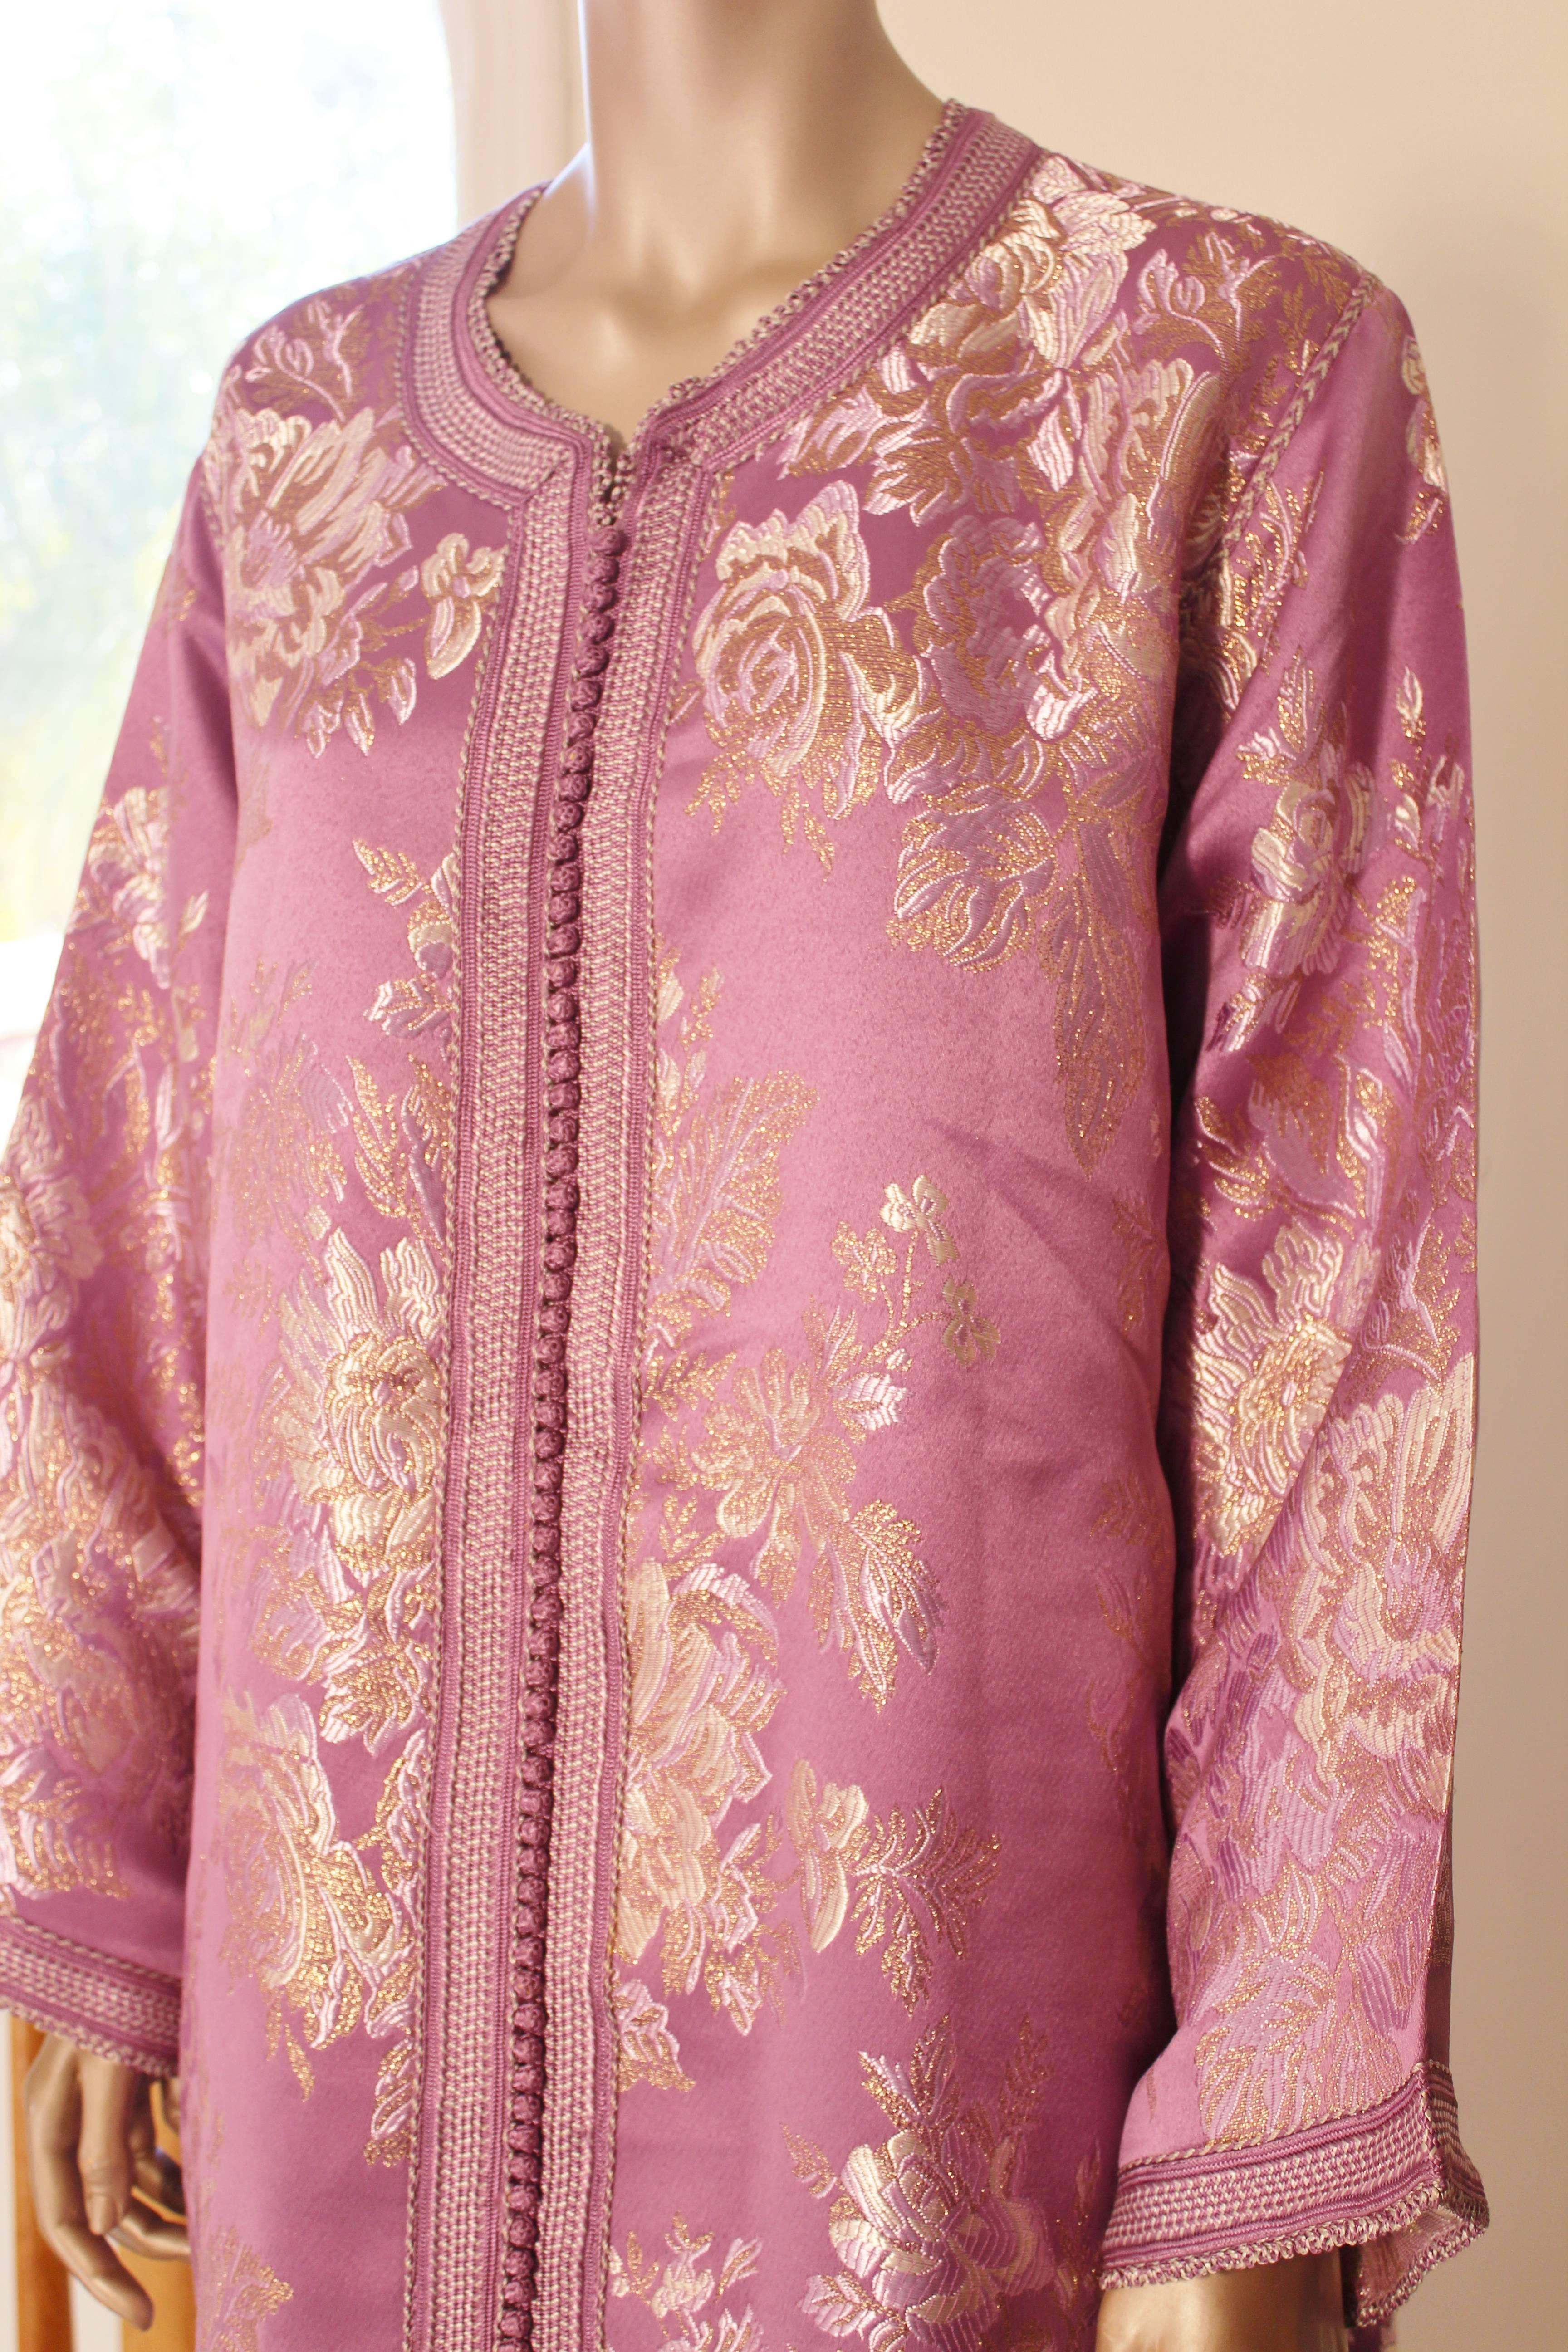 Robe caftan exotique marocaine en brocart métallique, circa 1970.
Ce luxueux caftan est conçu avec un tissu métallique doré brillant.
L'avant de l'élégante robe caftan maxi est agrémenté de boutons dorés tissés et de boucles qui descendent au centre